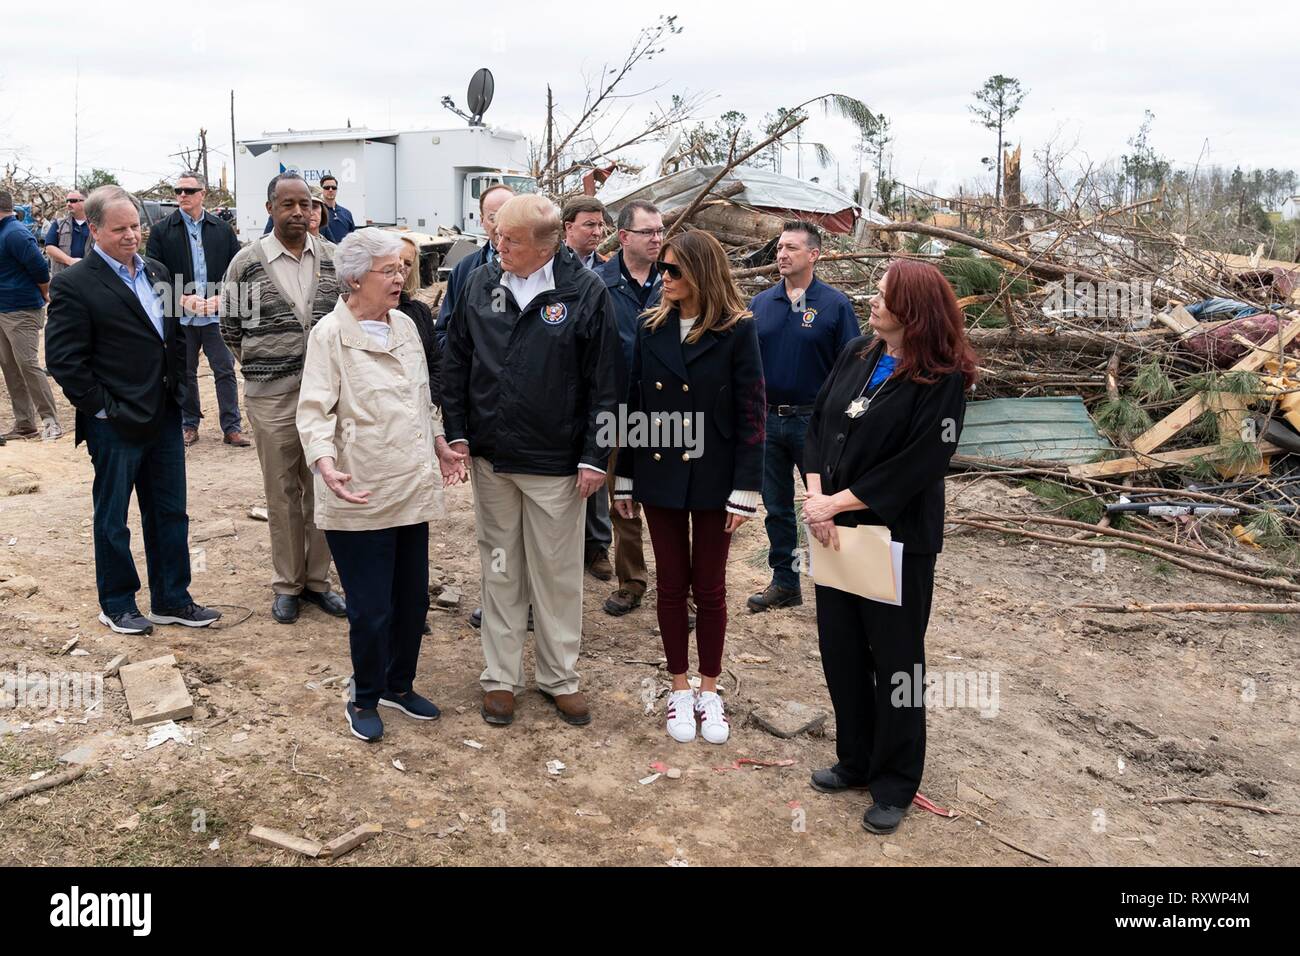 U.S prima signora Melania Trump e presidente Donald Trump a piedi con Gov. Kay Ivey, sinistra, come essi danno vista da un massiccio tornado Marzo 8, 2019 in Lee County, Alabama. La regione è stata colpita da un tornado il 3 marzo uccidendo 23 persone. Foto Stock